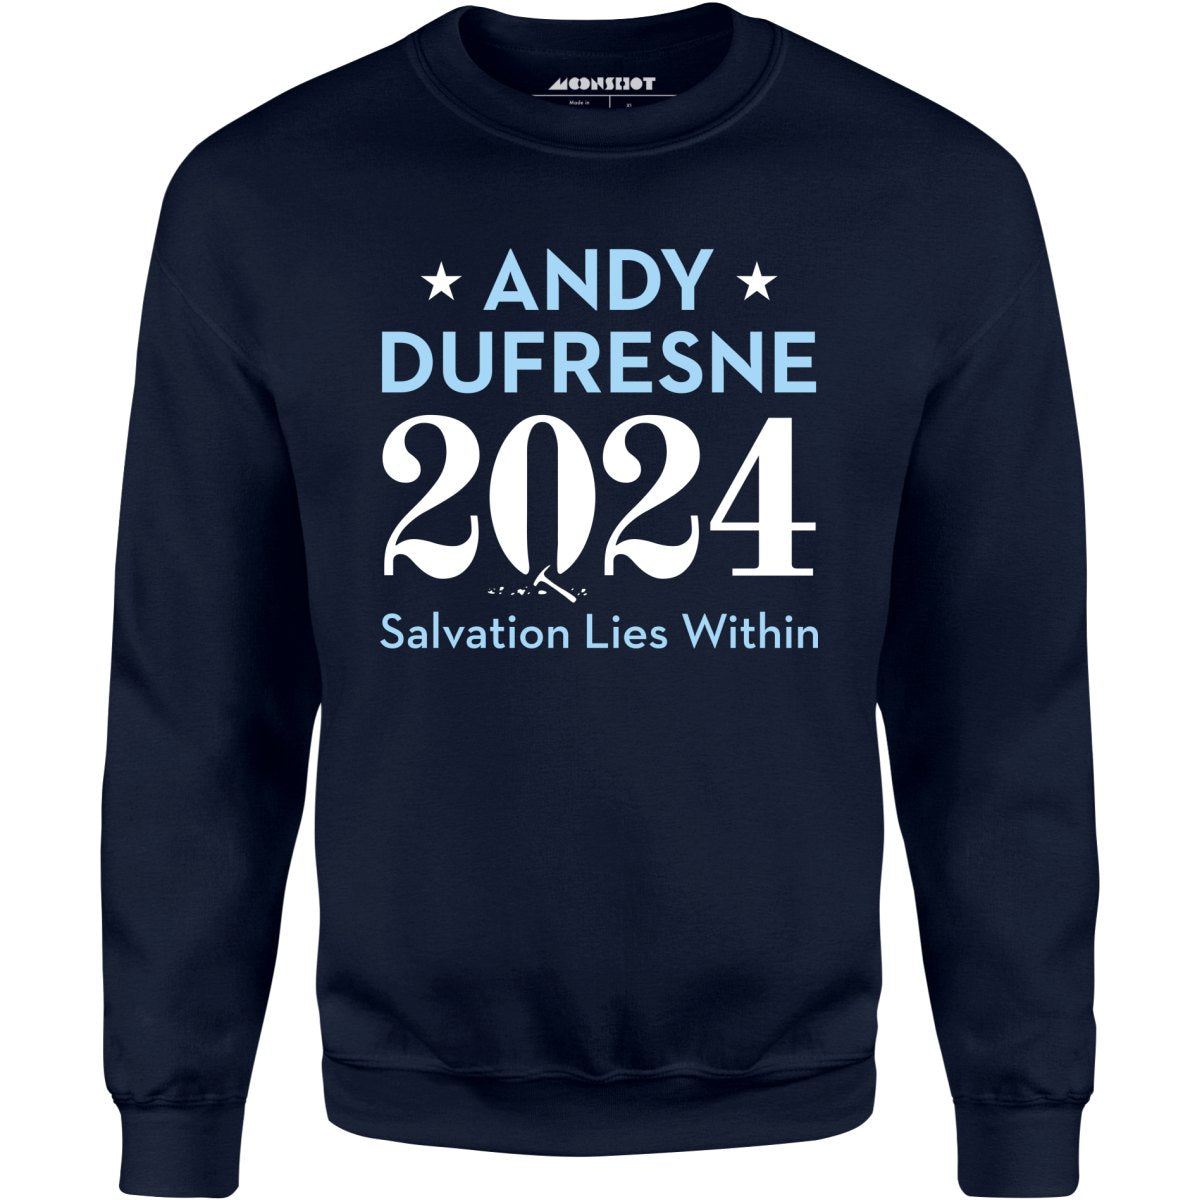 Andy Dufresne 2024 - Unisex Sweatshirt